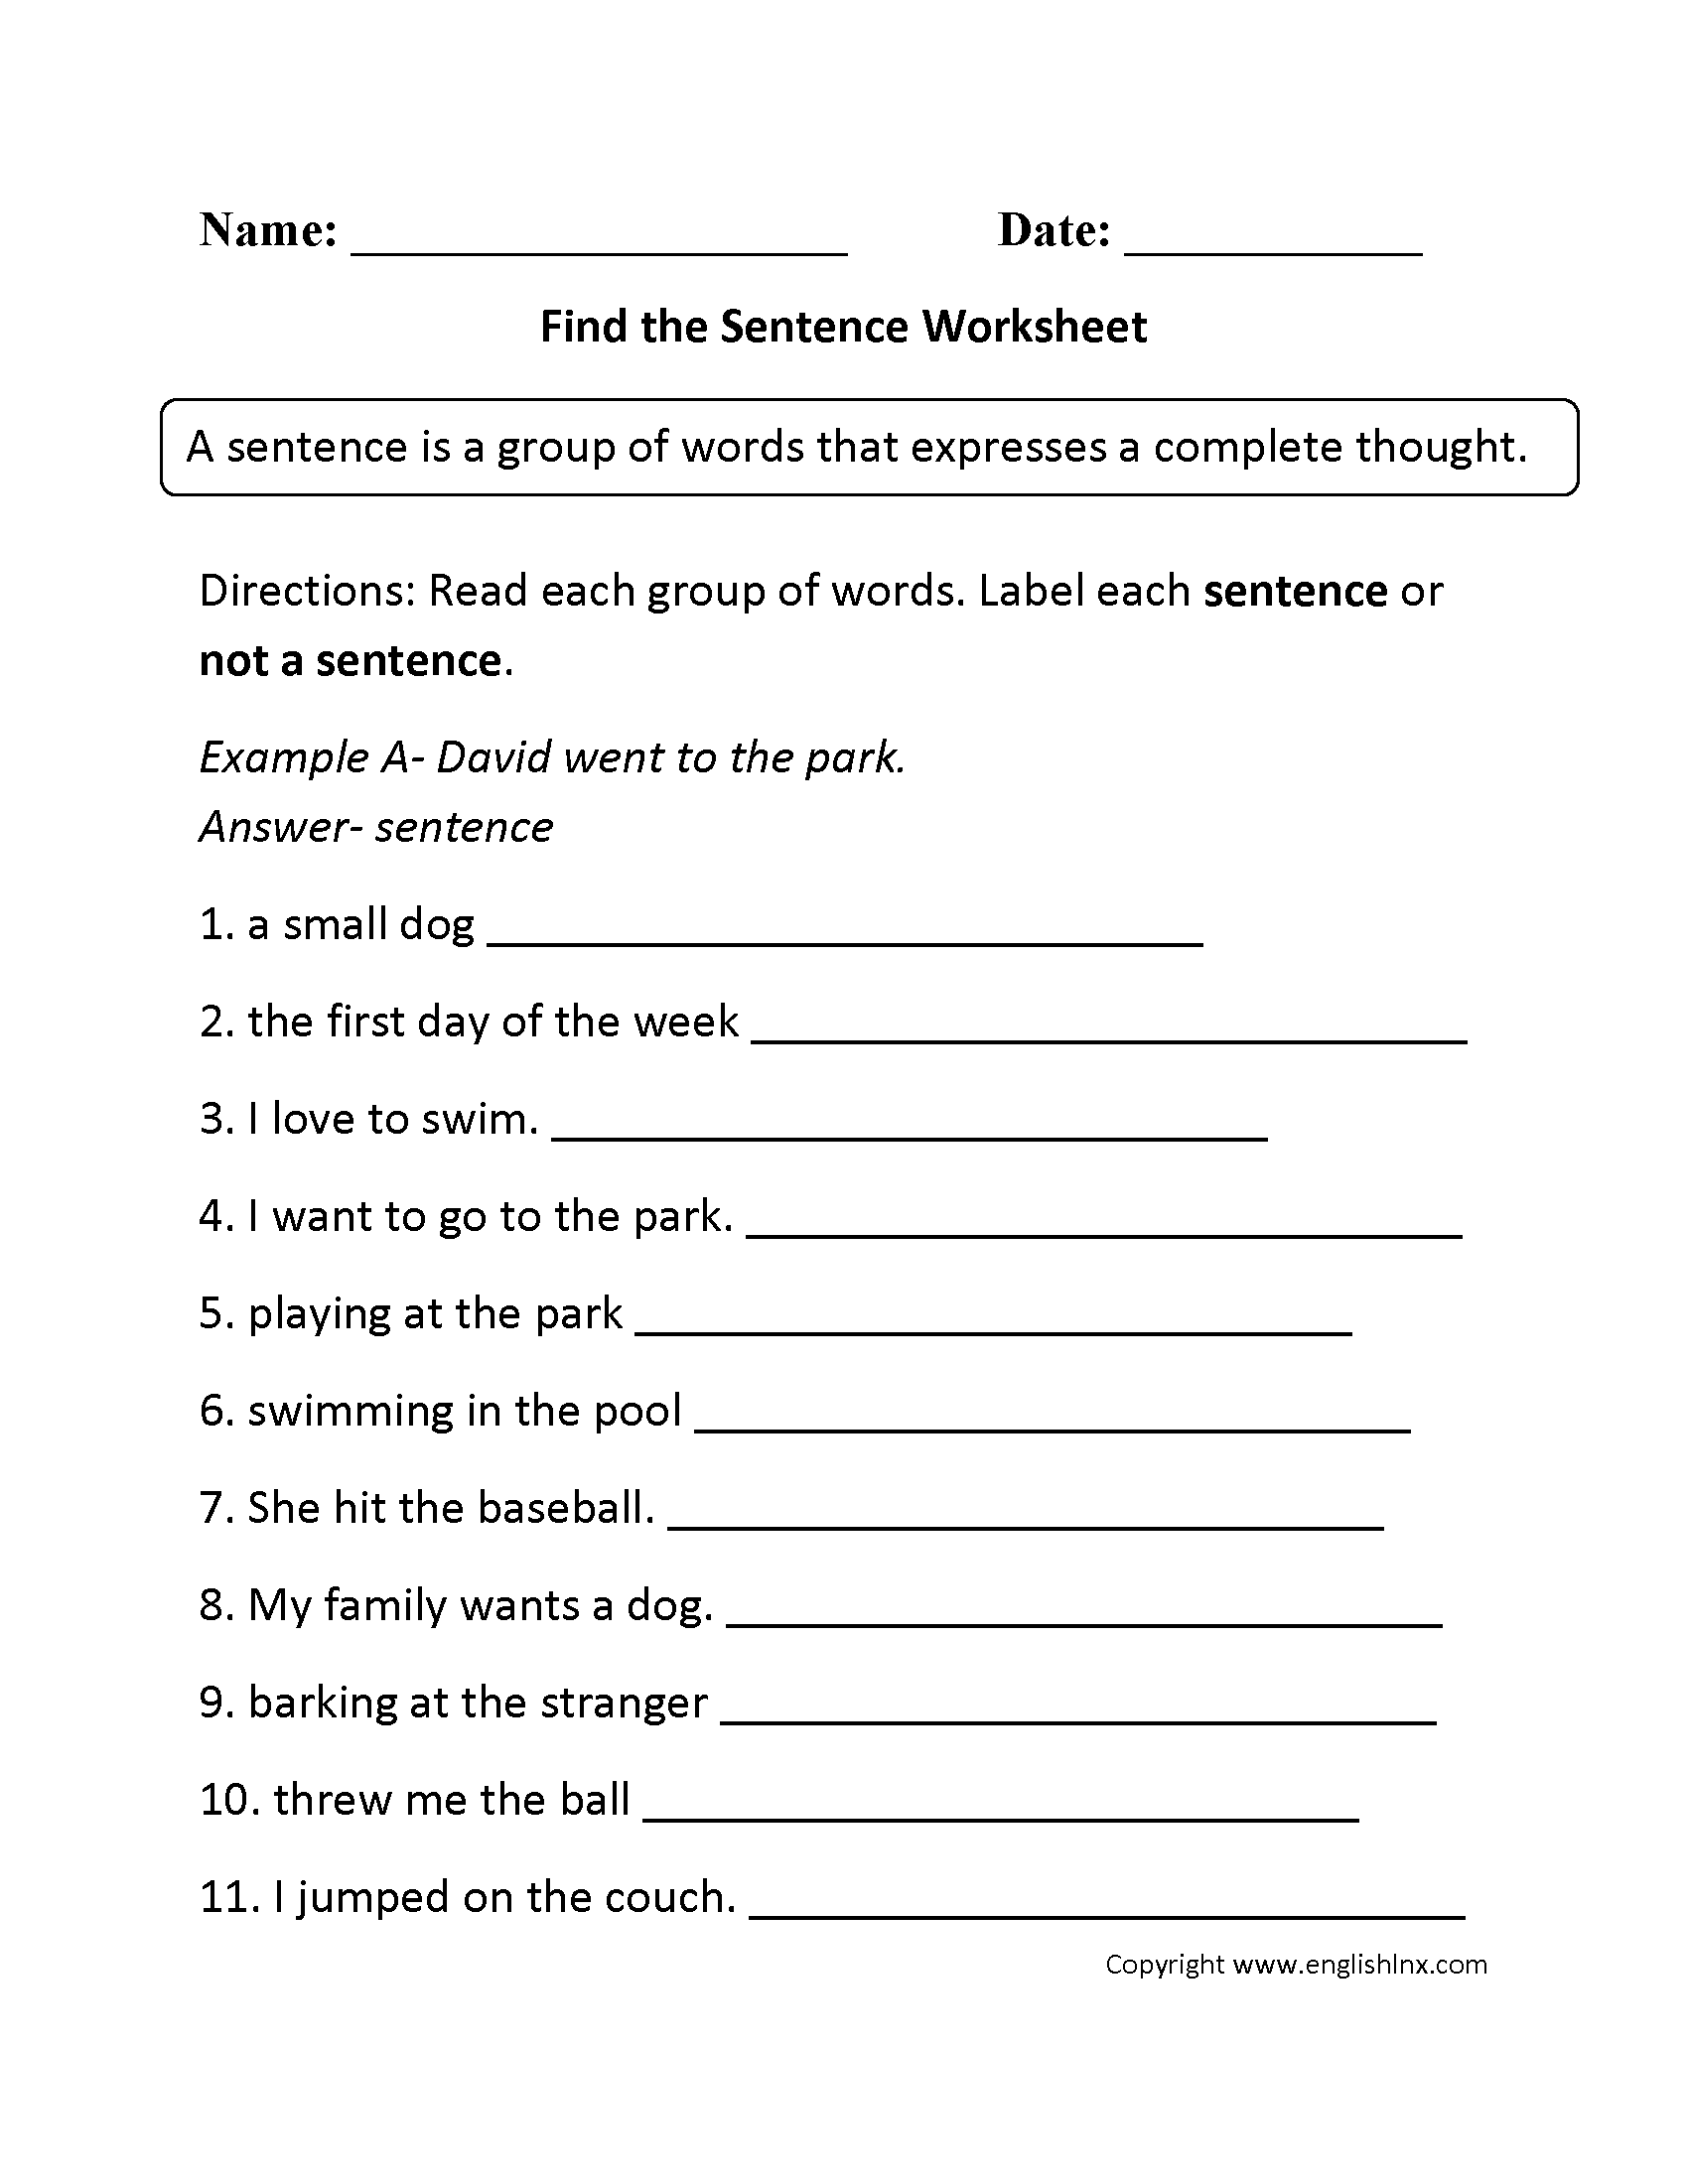 Find the Sentence Worksheet